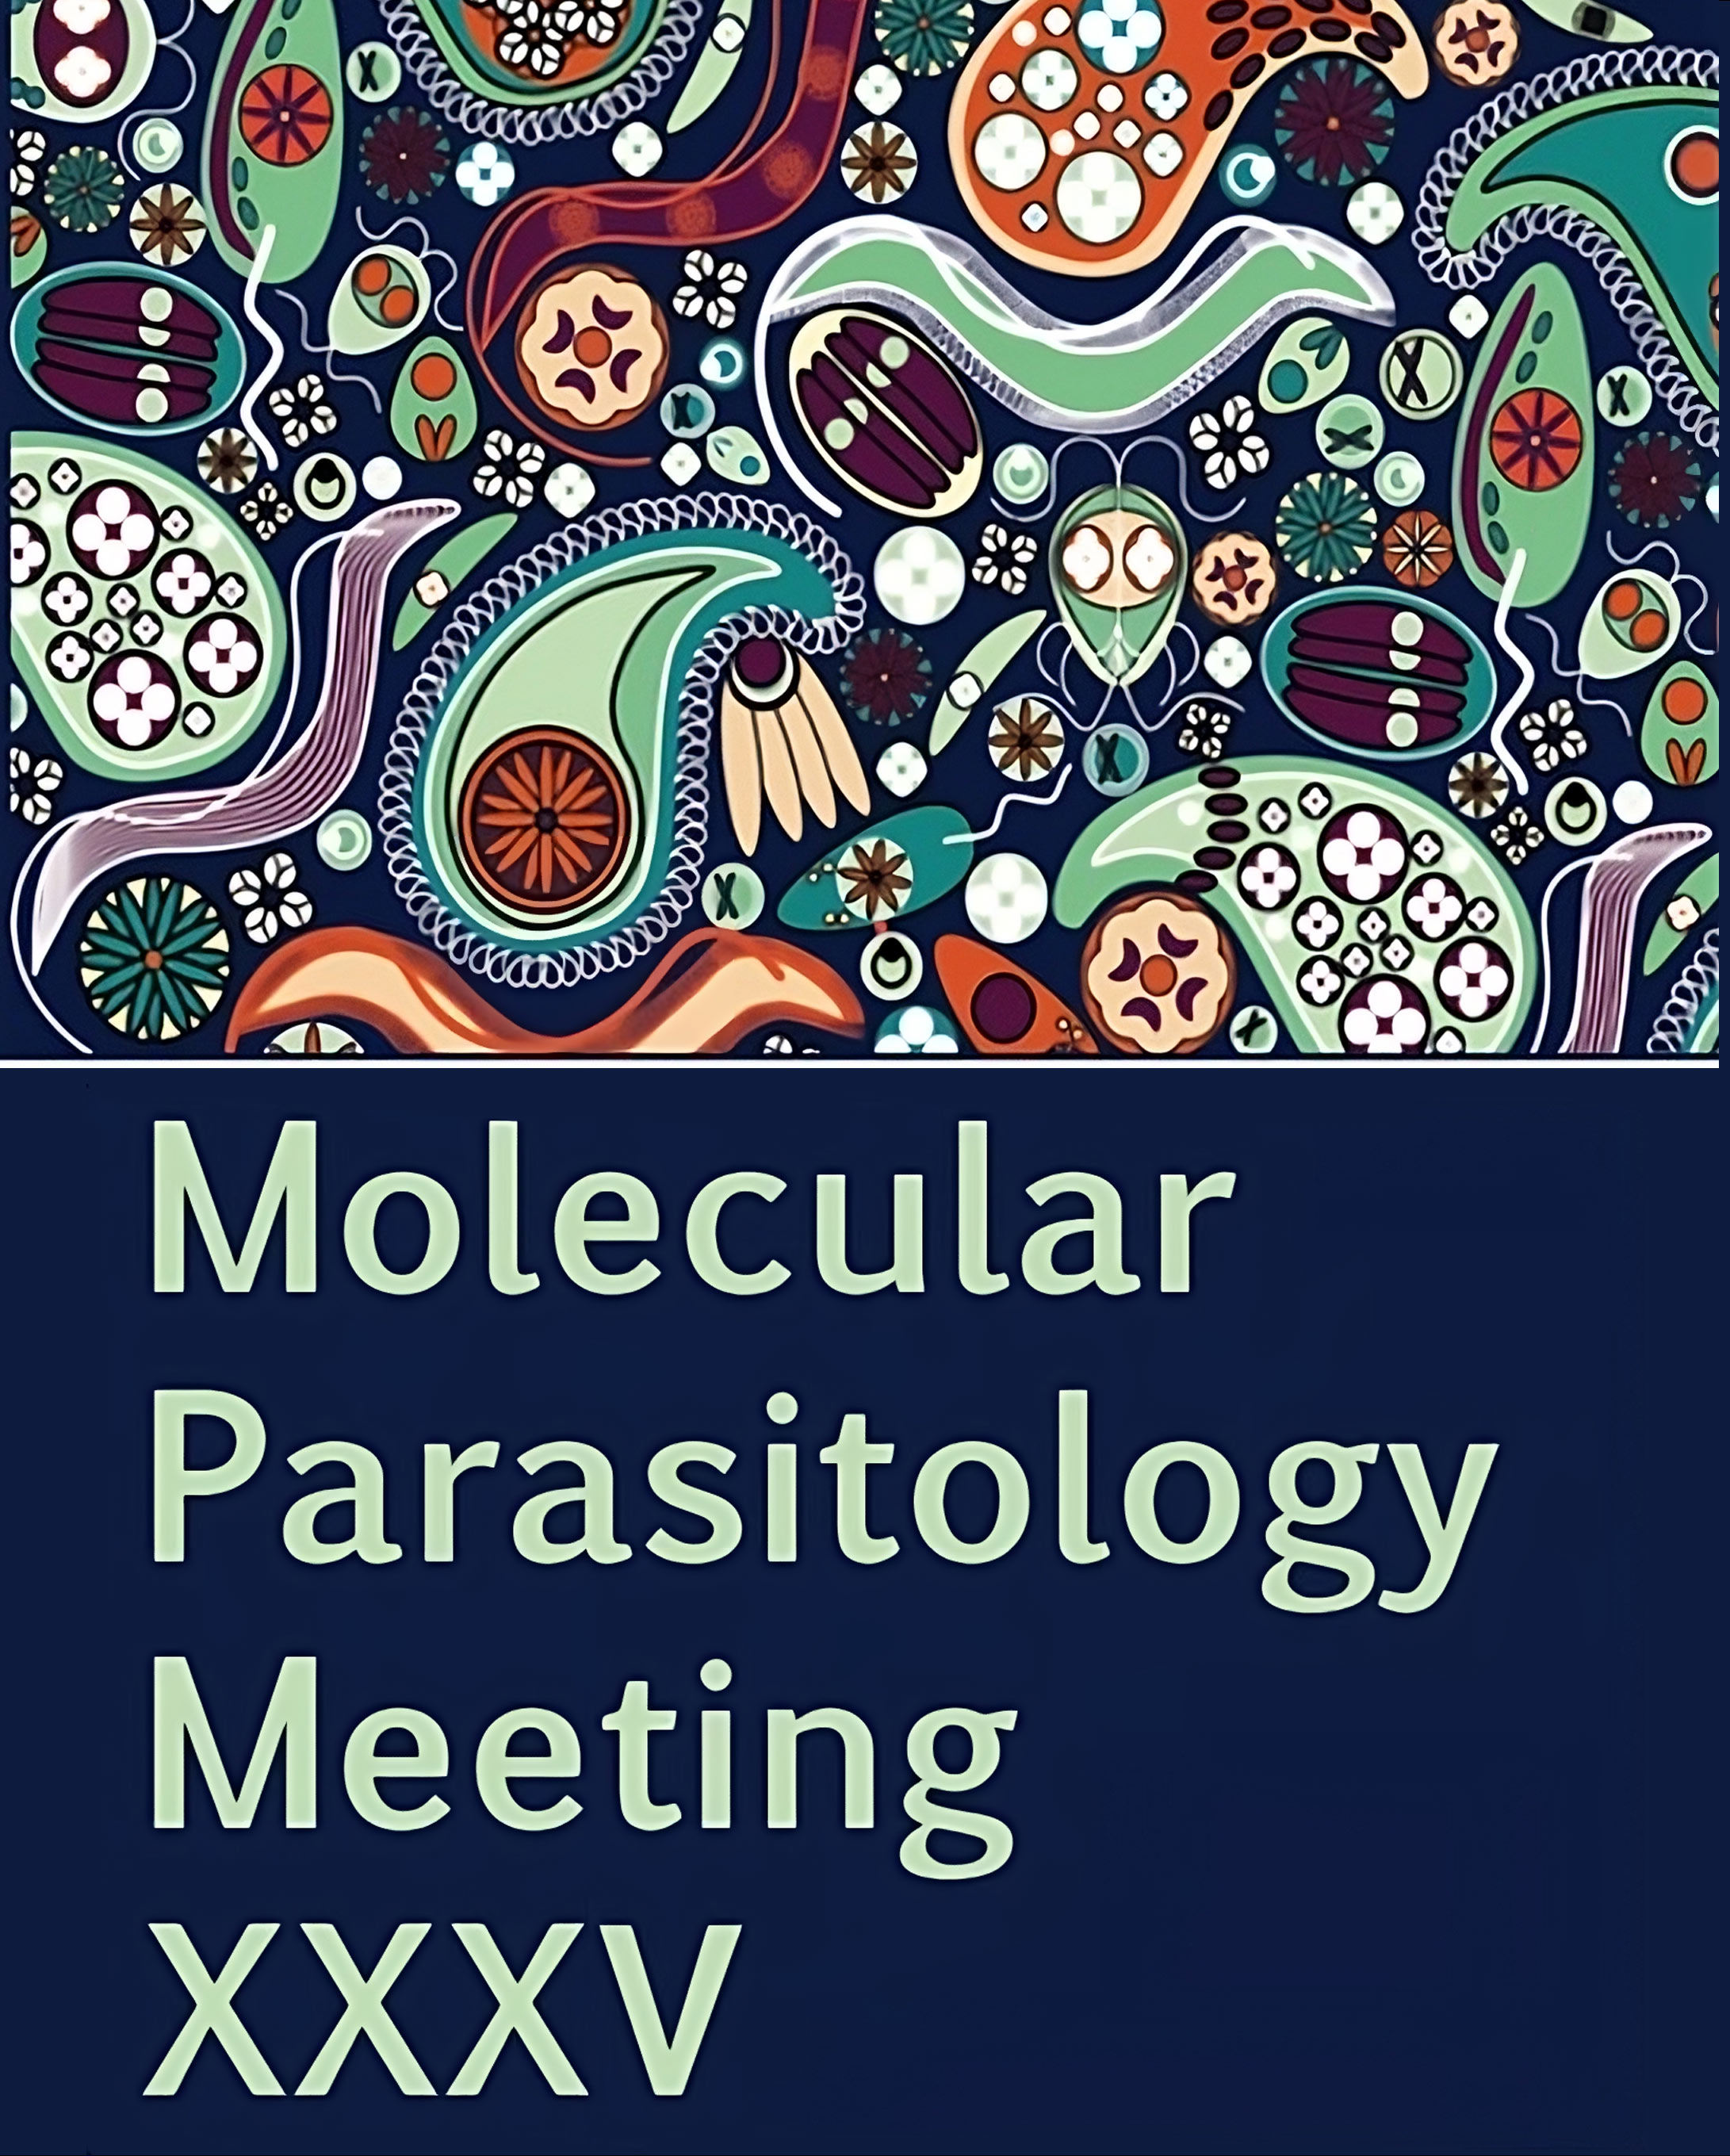 Molecular Parasitology Meeting - MPM XXXV